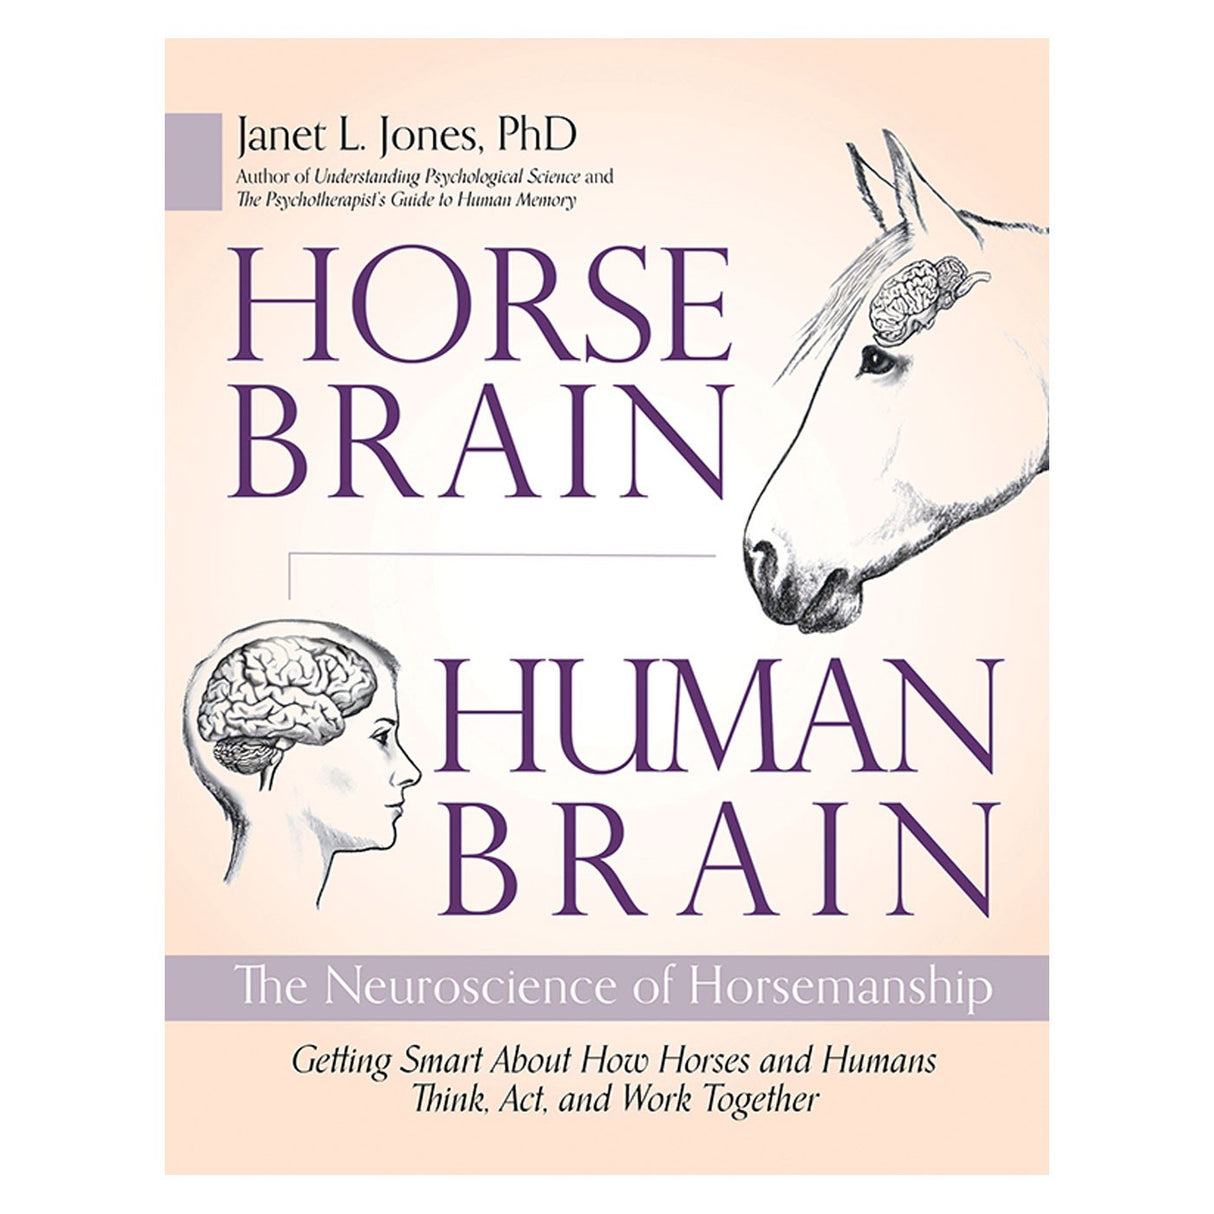 Trafalgar Square Horse Brain, Human Brain